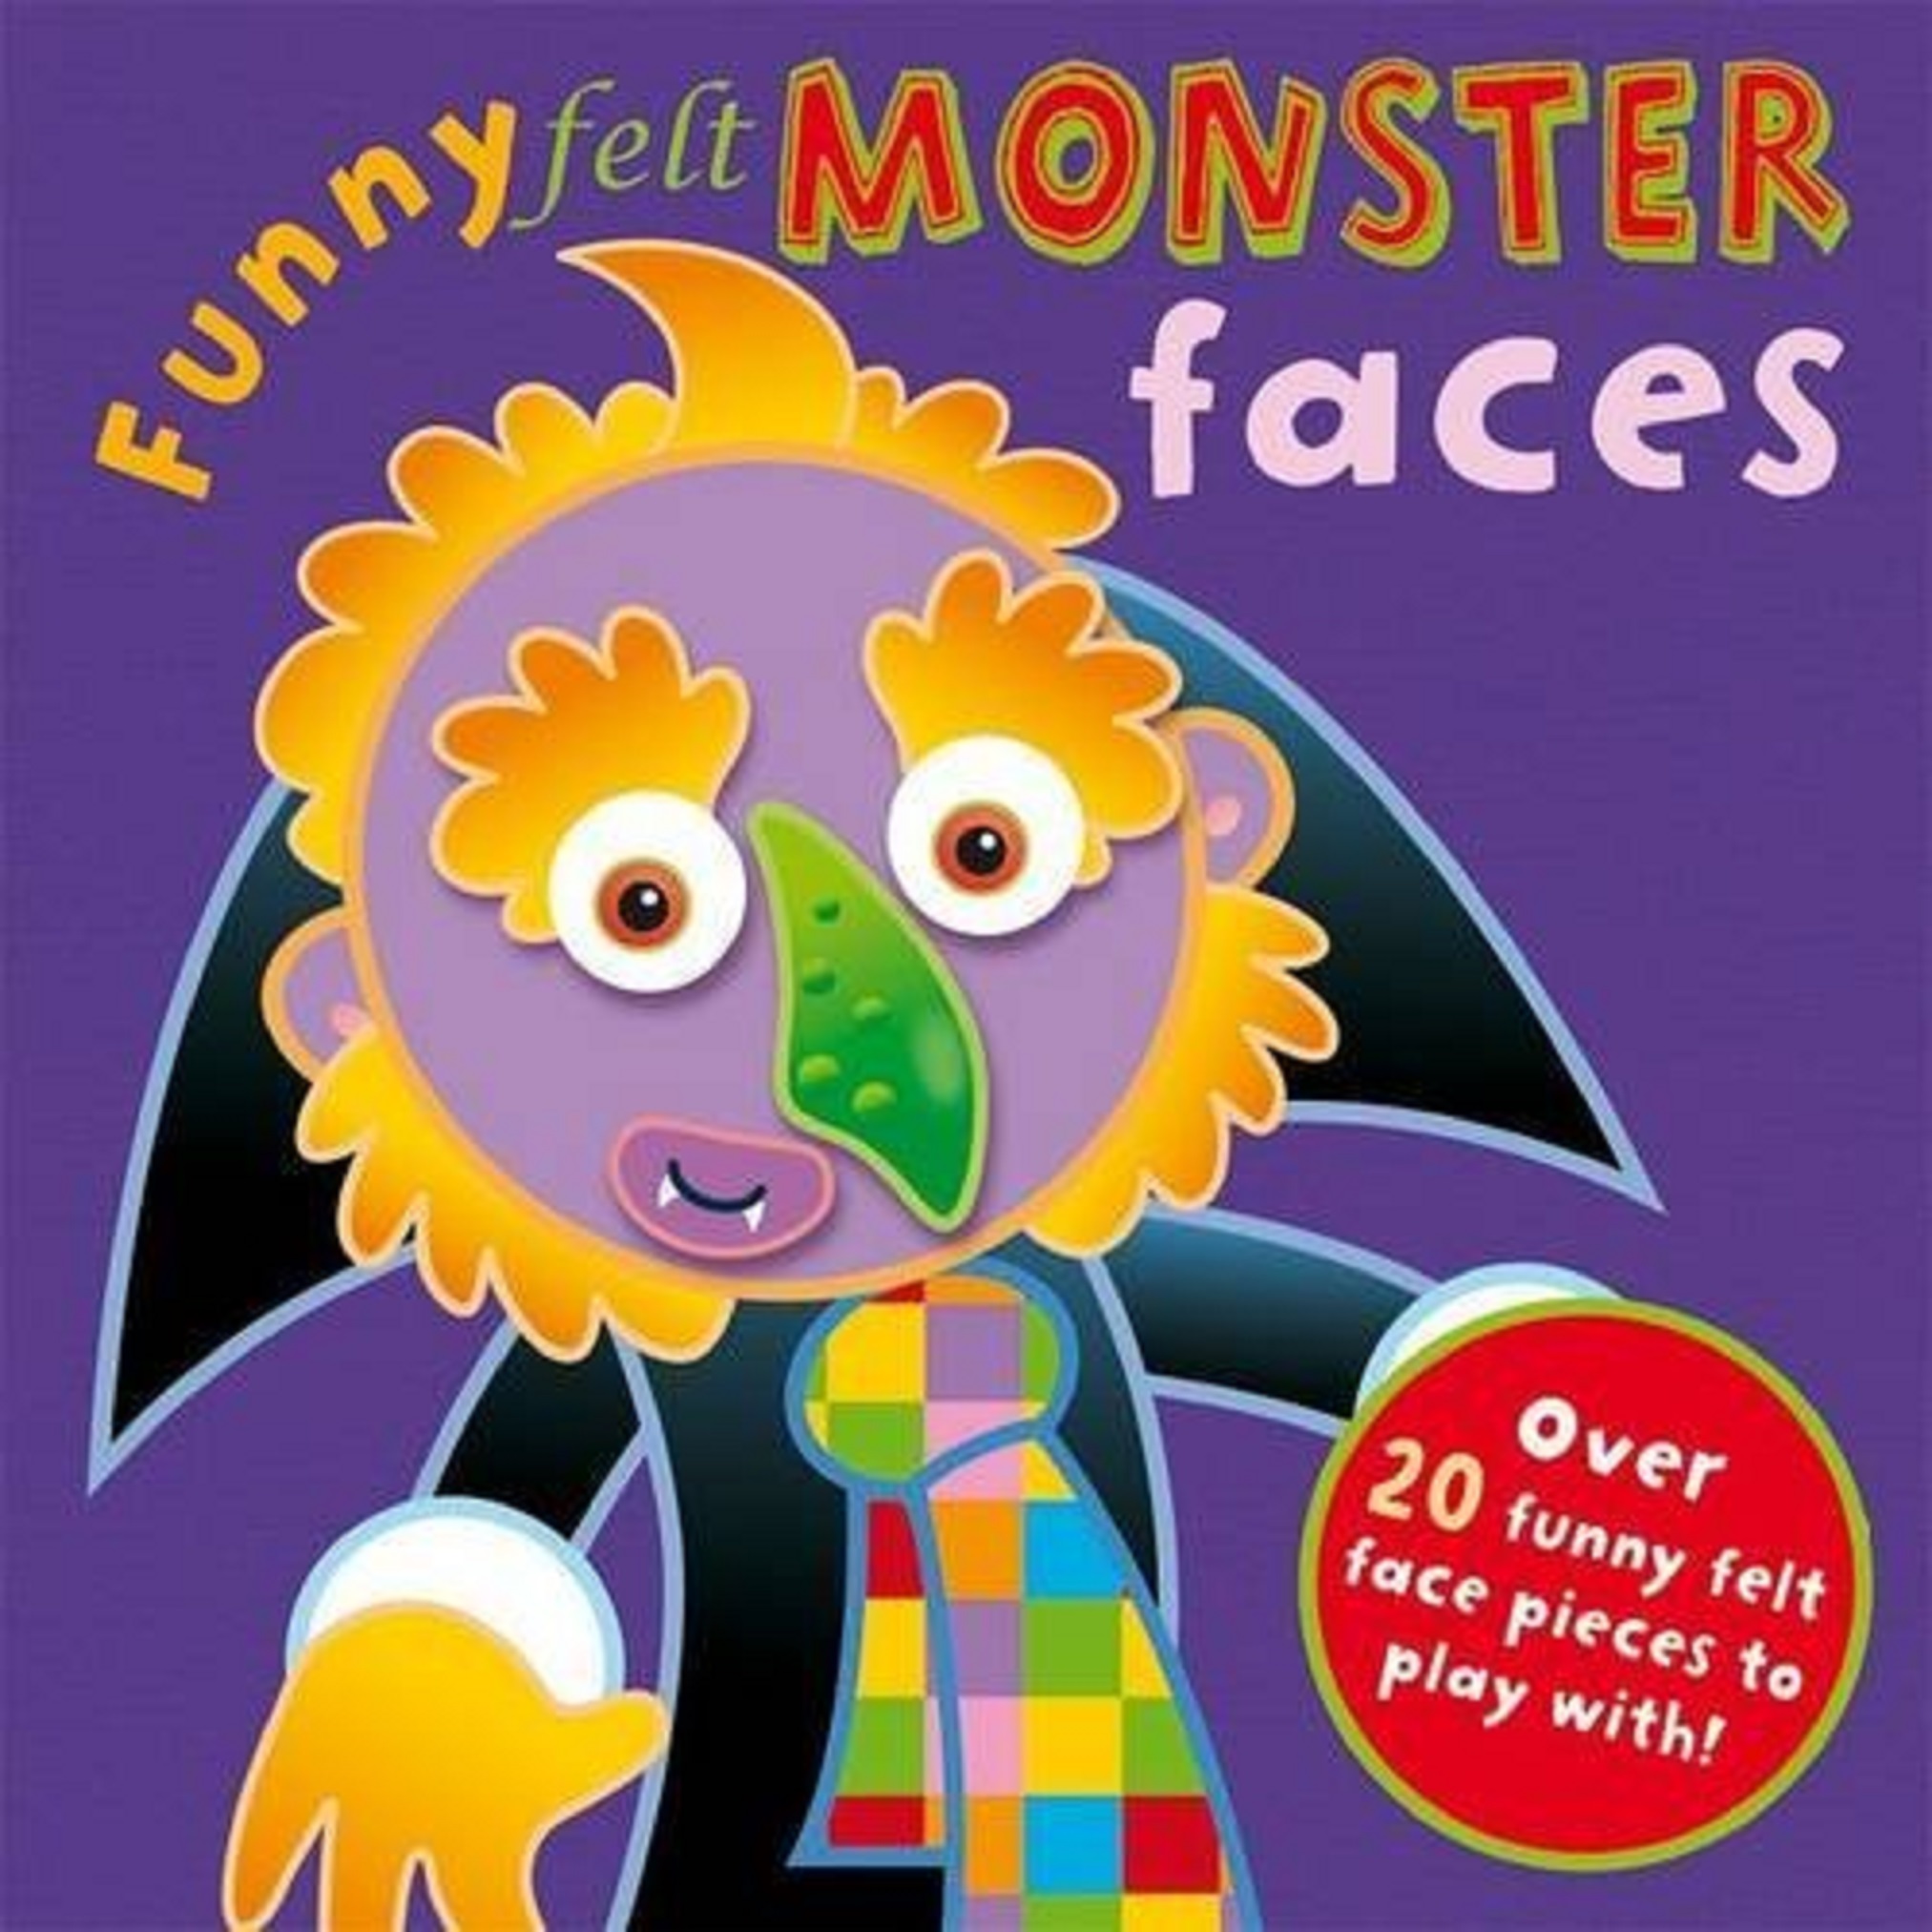 Funny Felt Monster Faces | Libby Hamilton